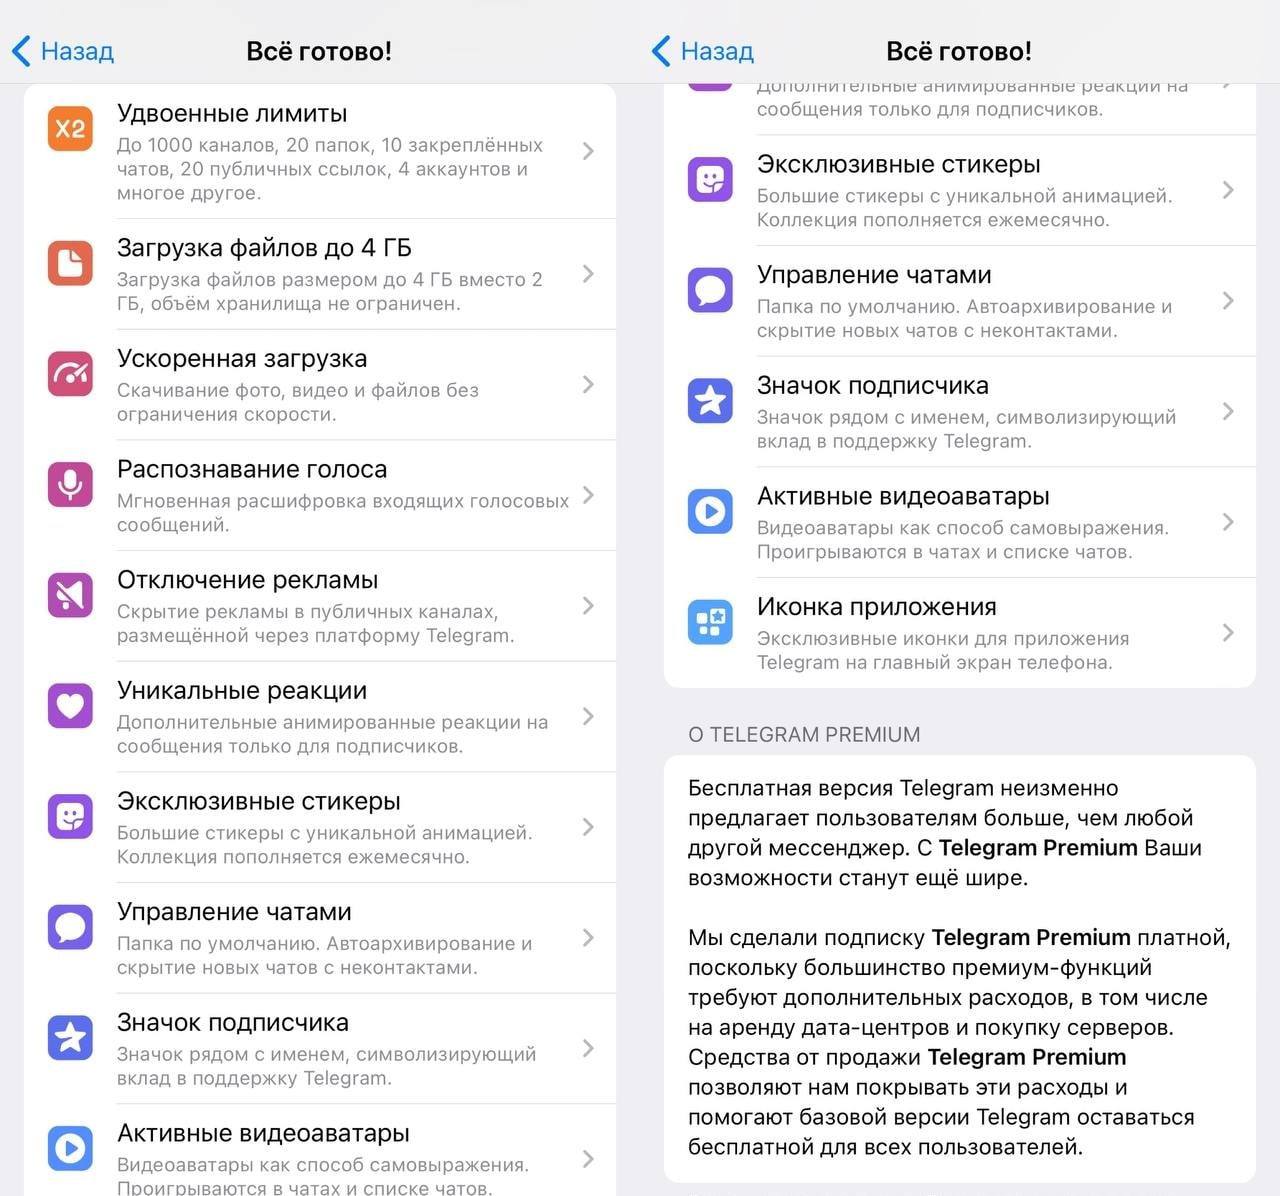 Скачать телеграмм премиум на андроид бесплатно последняя версия на русском языке без вирусов фото 76